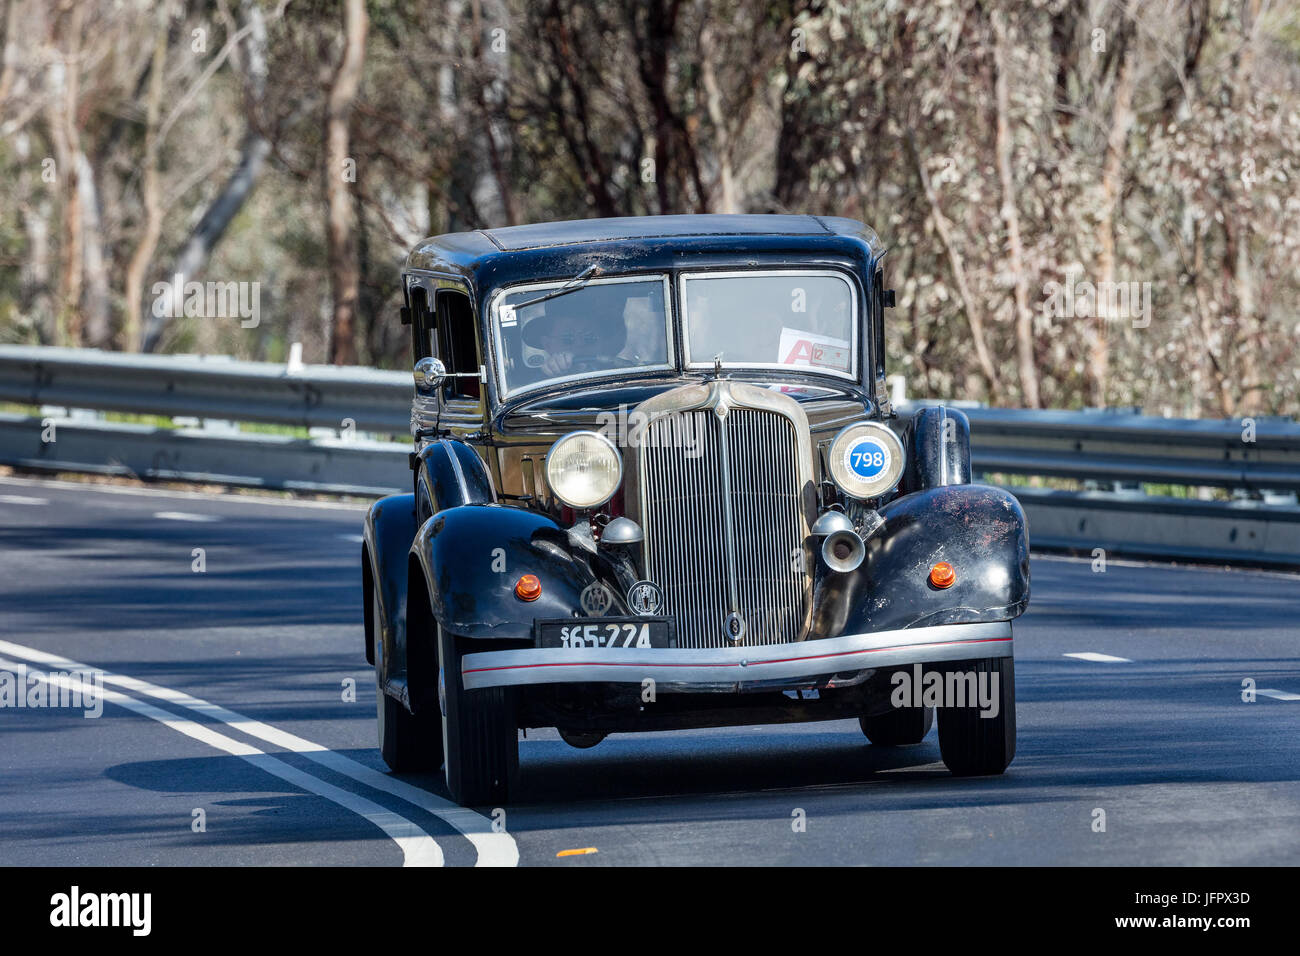 Jahrgang 1933 Chrysler CT Limousine fahren auf der Landstraße in der Nähe der Stadt Birdwood, South Australia. Stockfoto